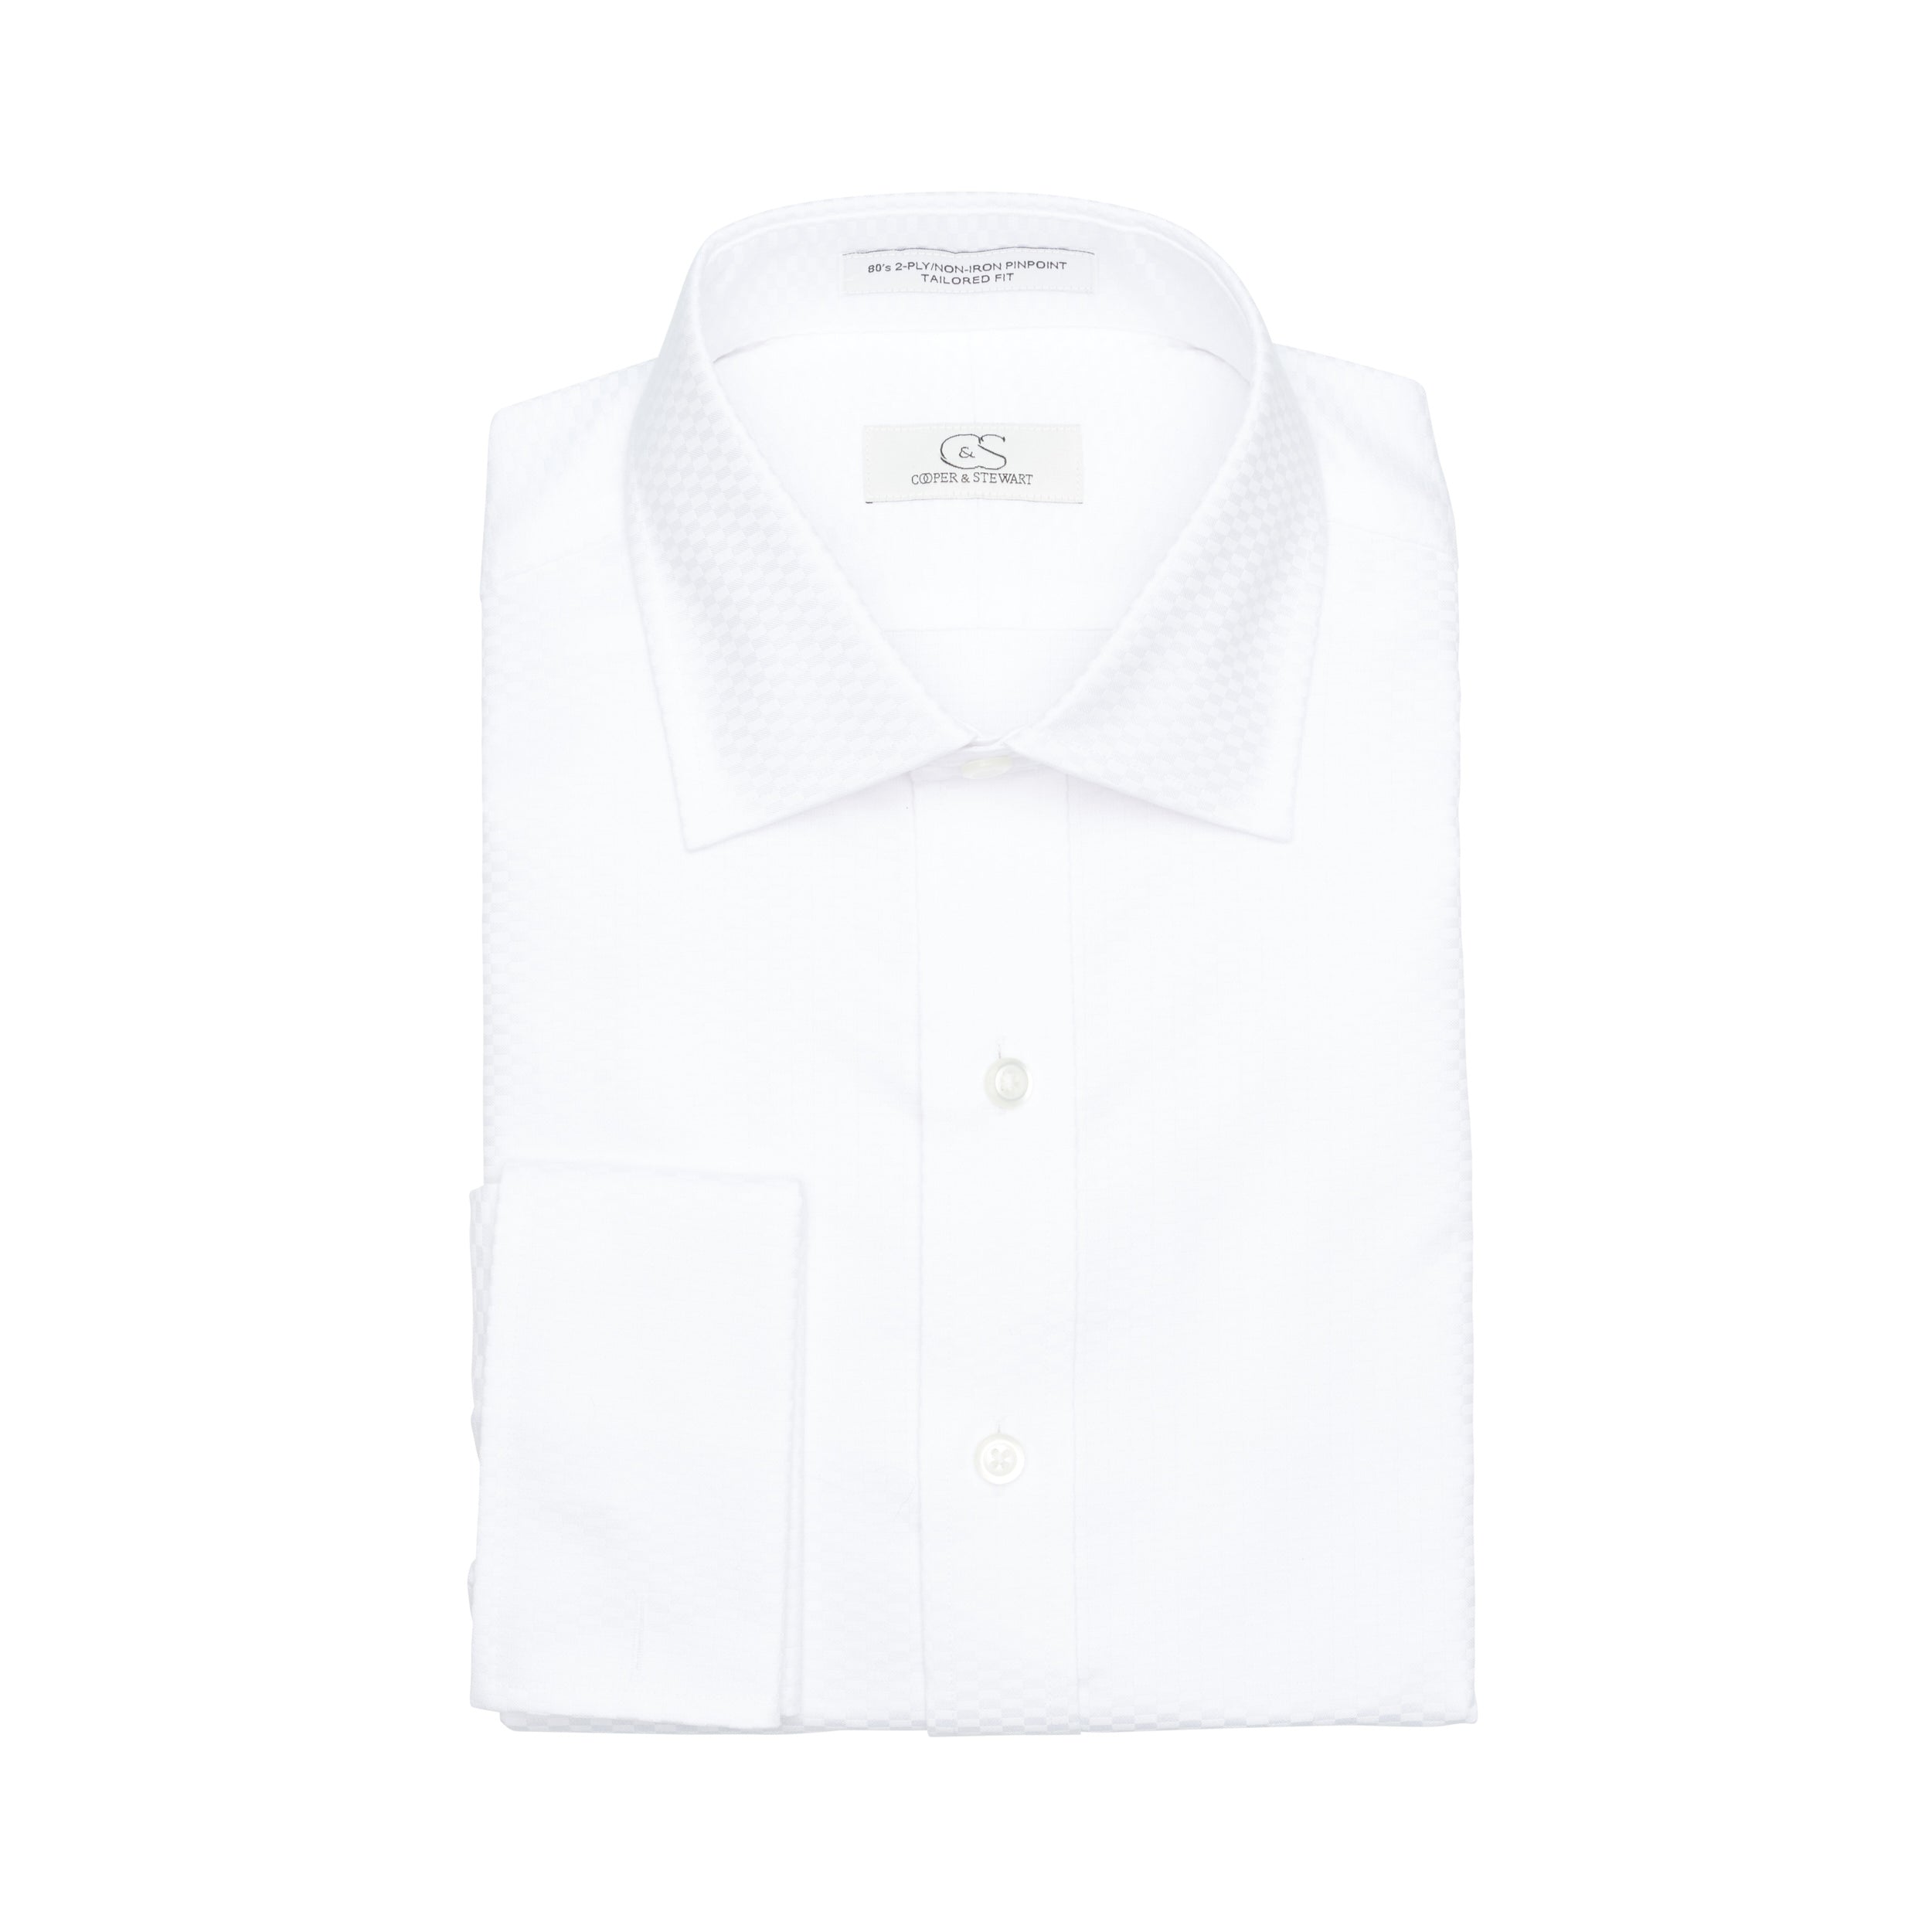 010 SC - White Tonal Tuxedo Spread Collar